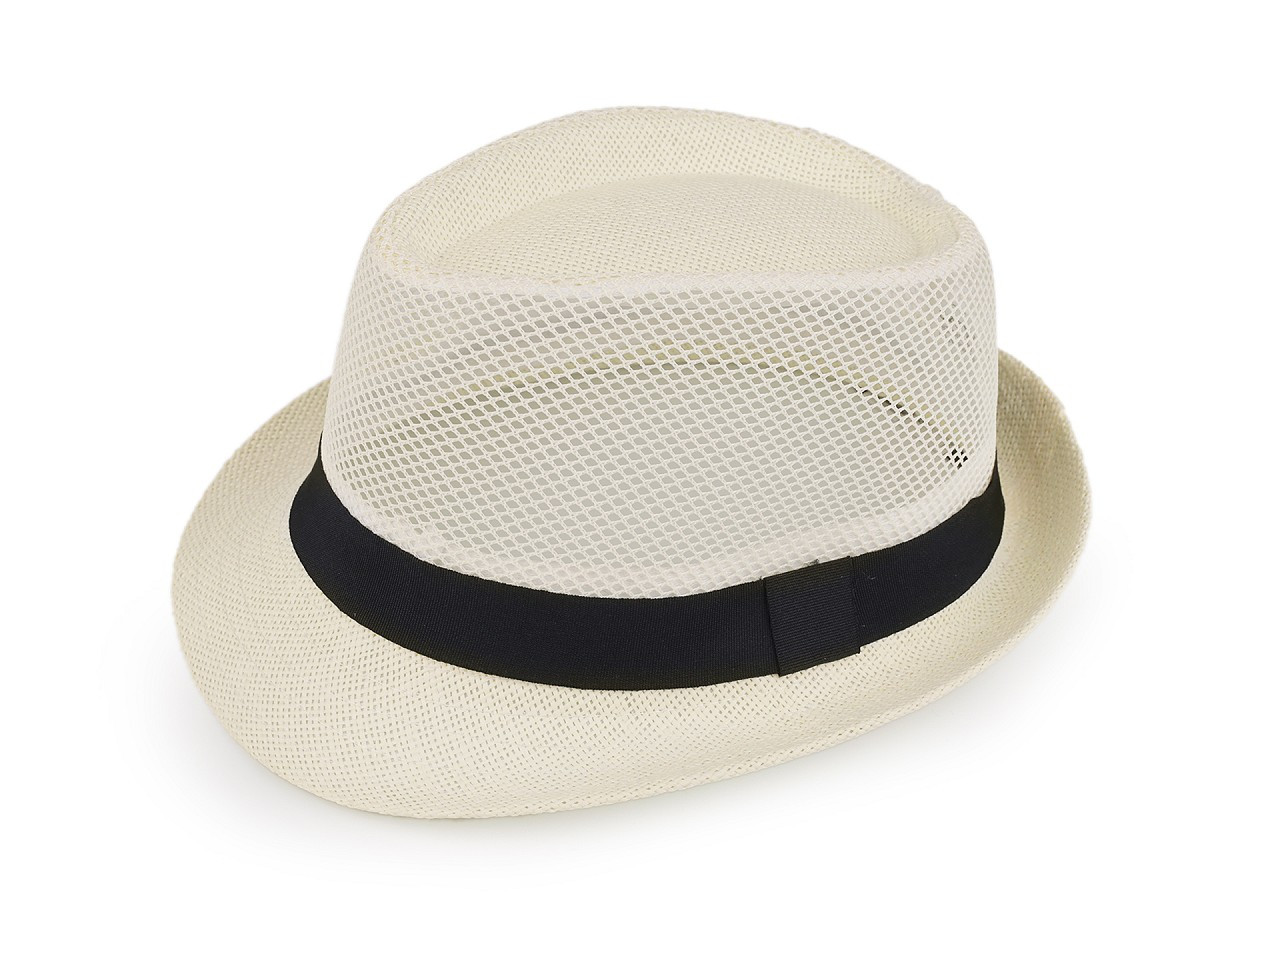 Letní klobouk / slamák unisex, barva 10 krémová světlá